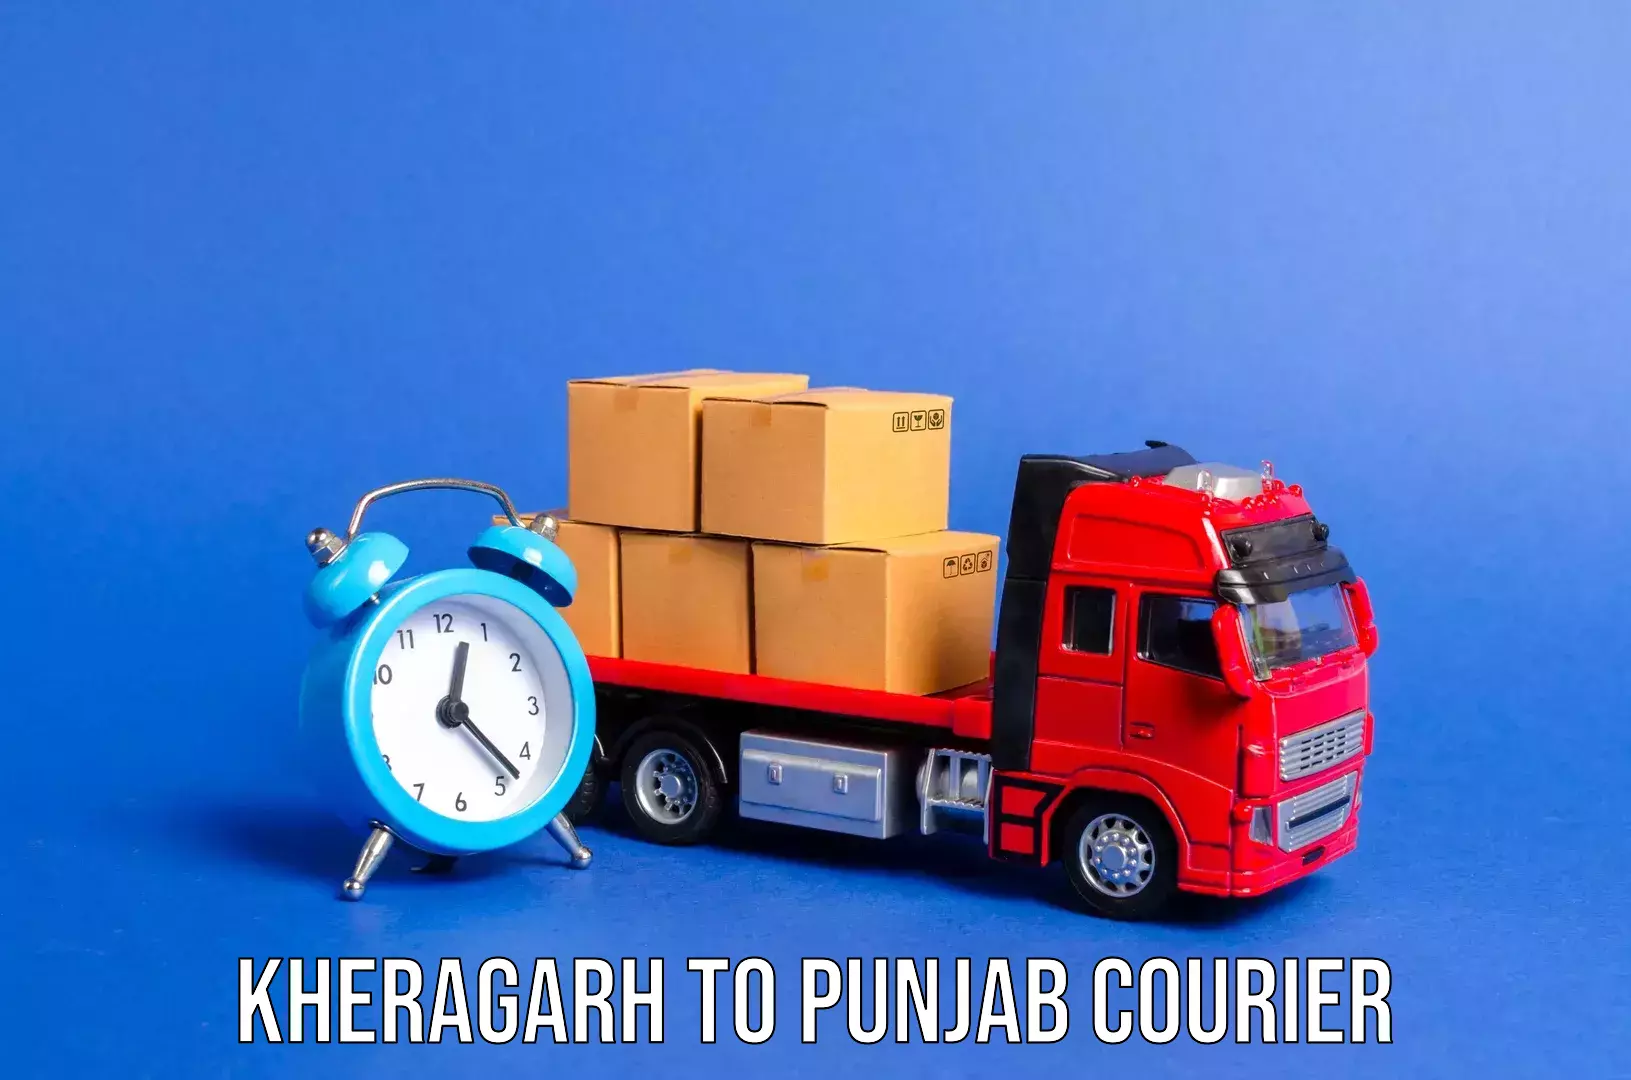 Luggage shipment tracking Kheragarh to Sunam